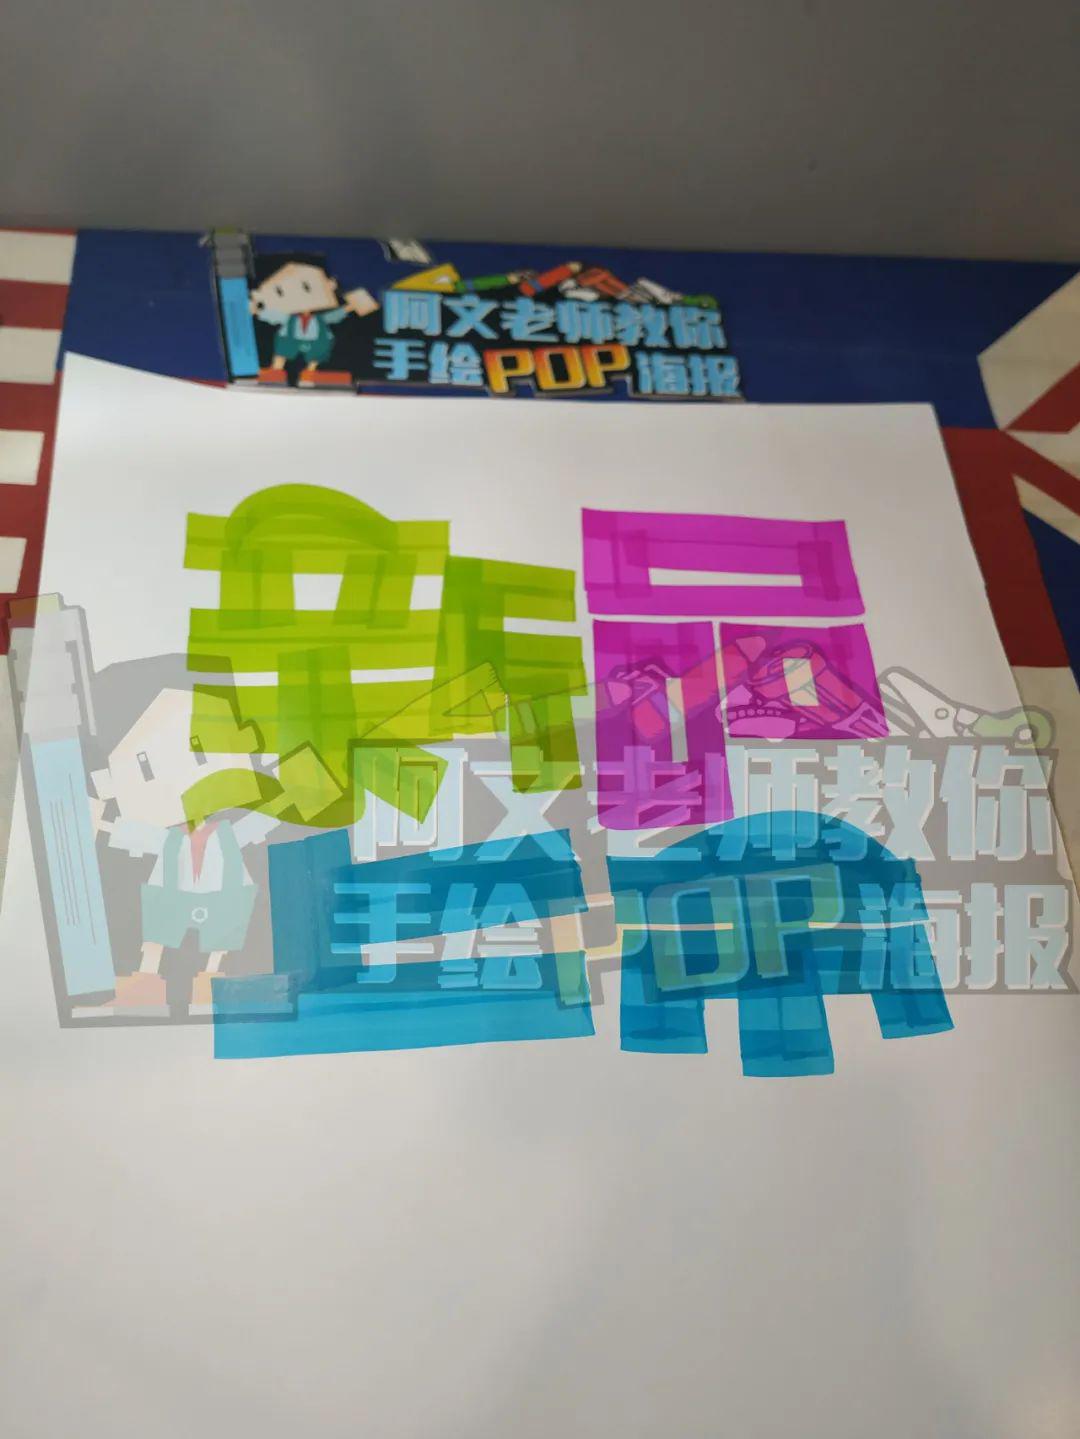 芦荟pop手绘海报图片